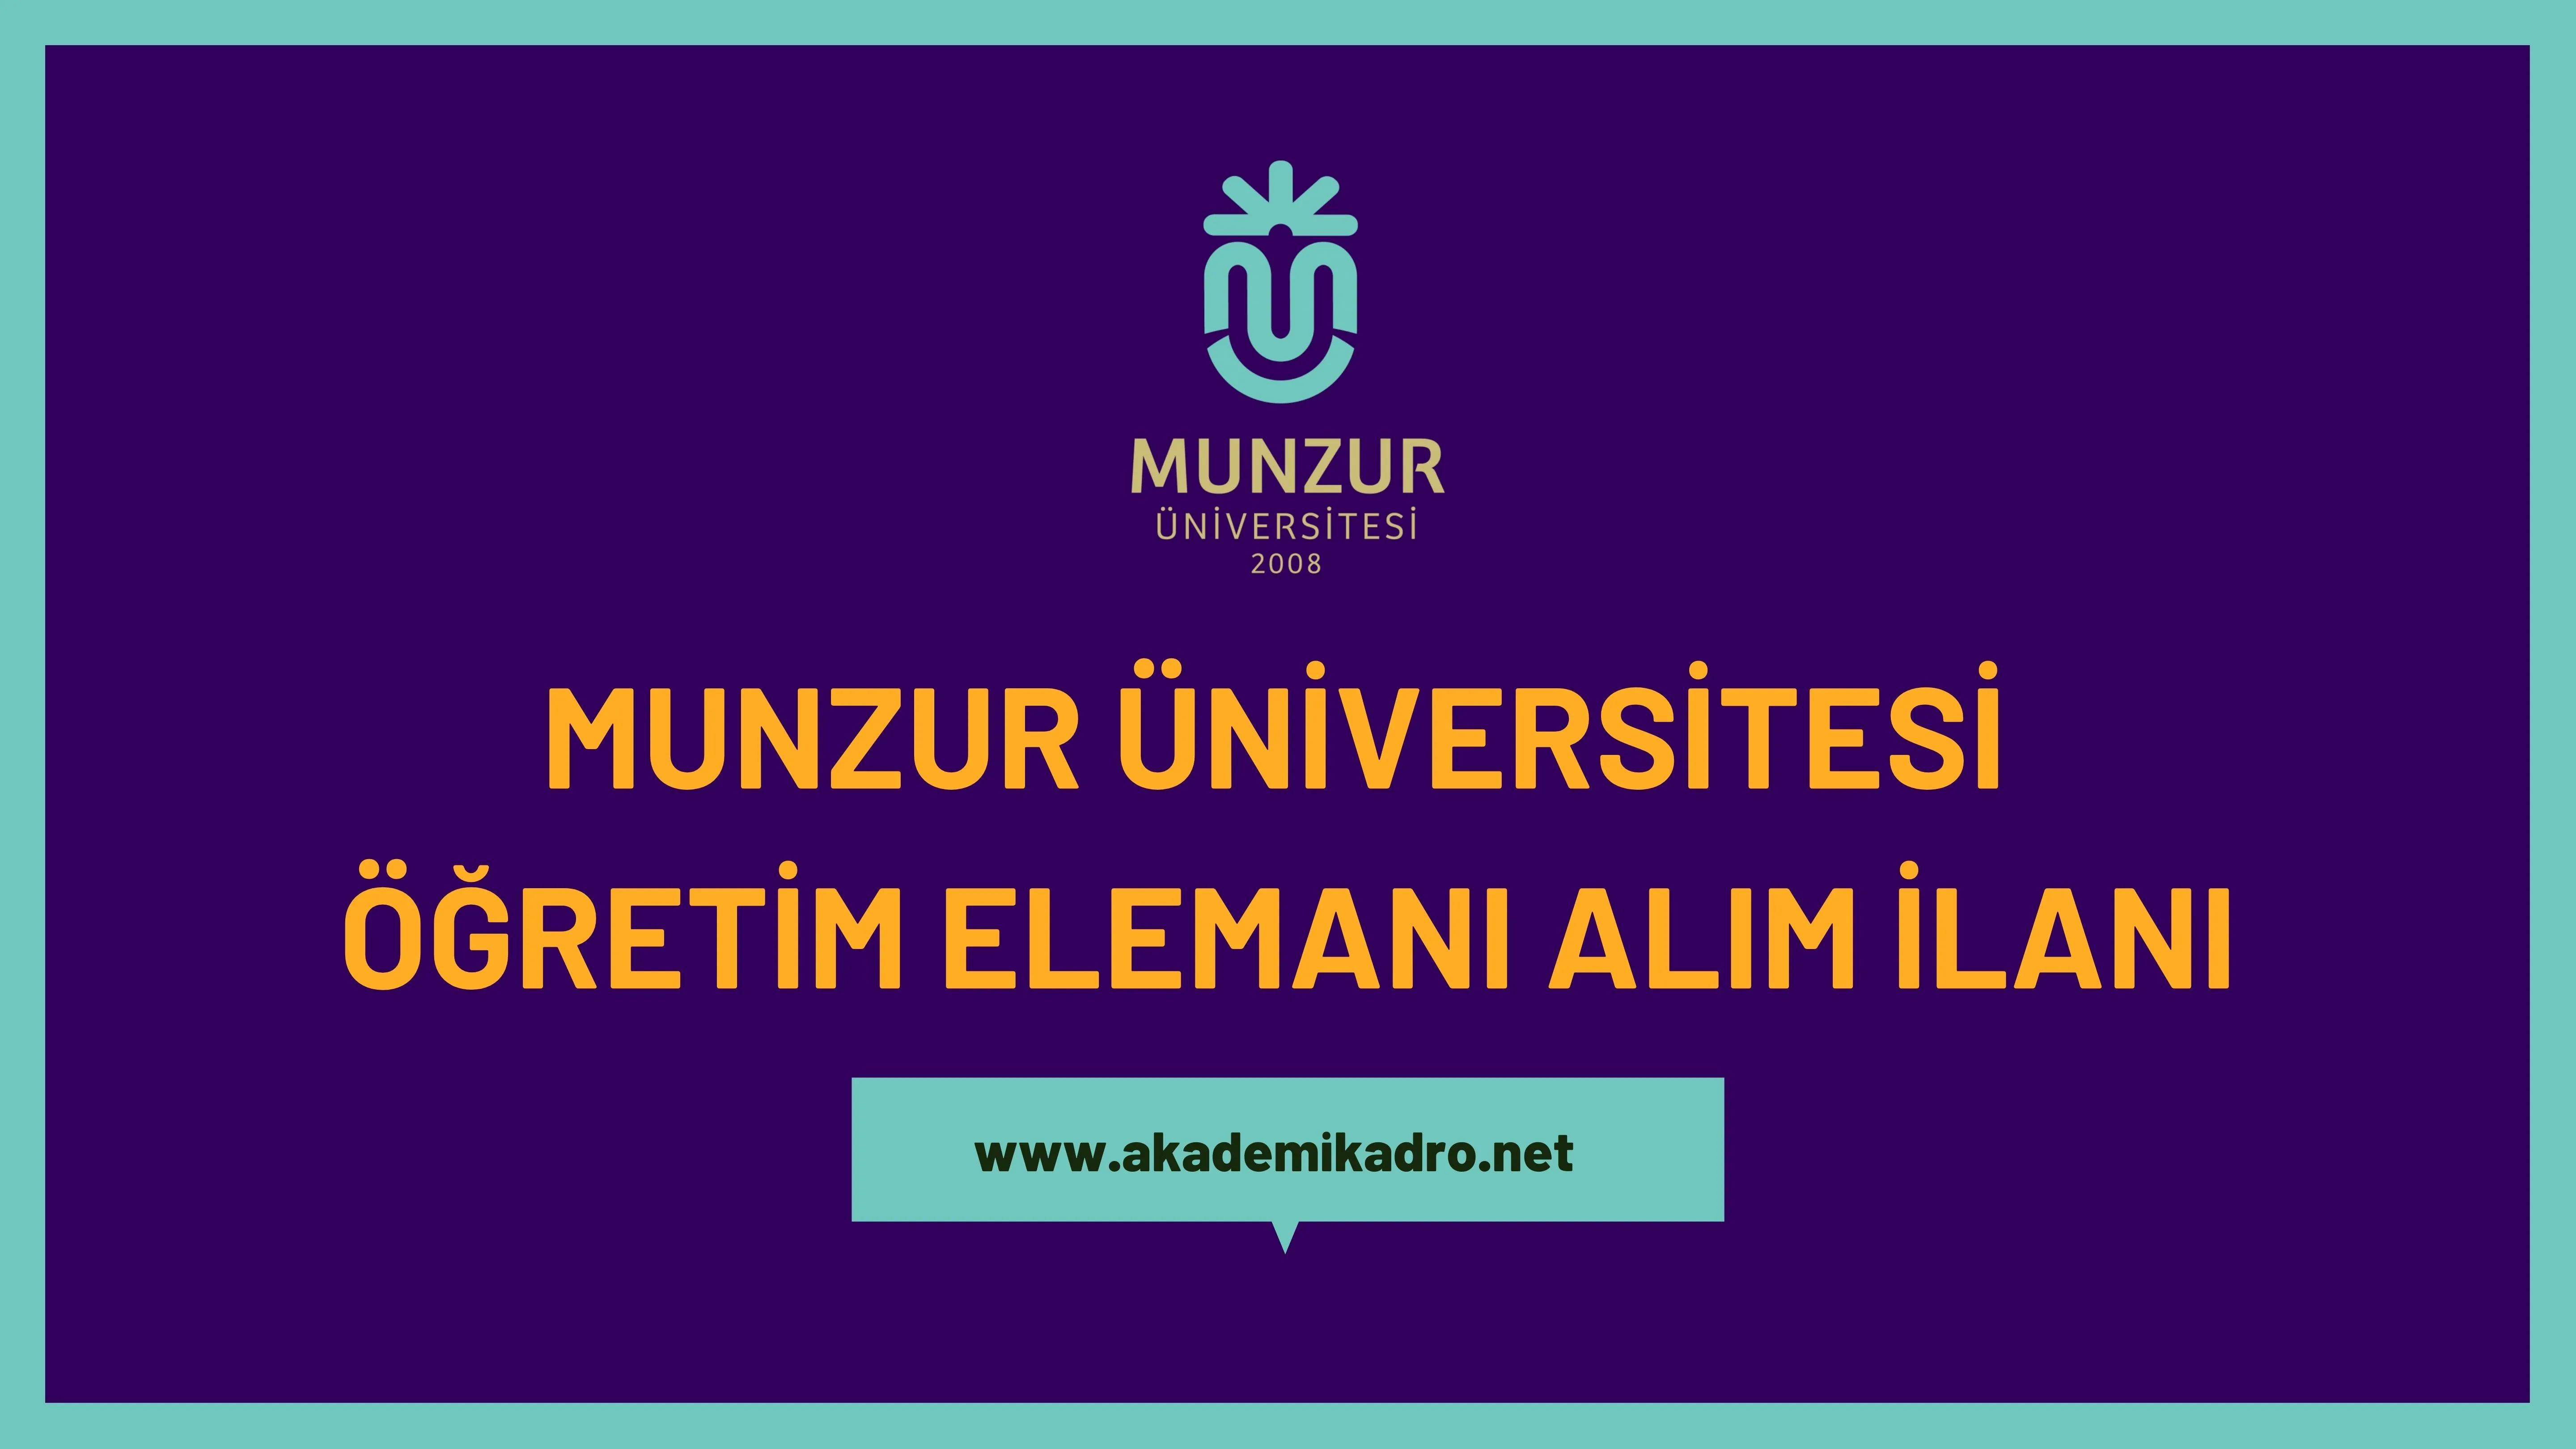 Munzur Üniversitesi 5 Öğretim görevlisi ve 16 öğretim üyesi alacak.